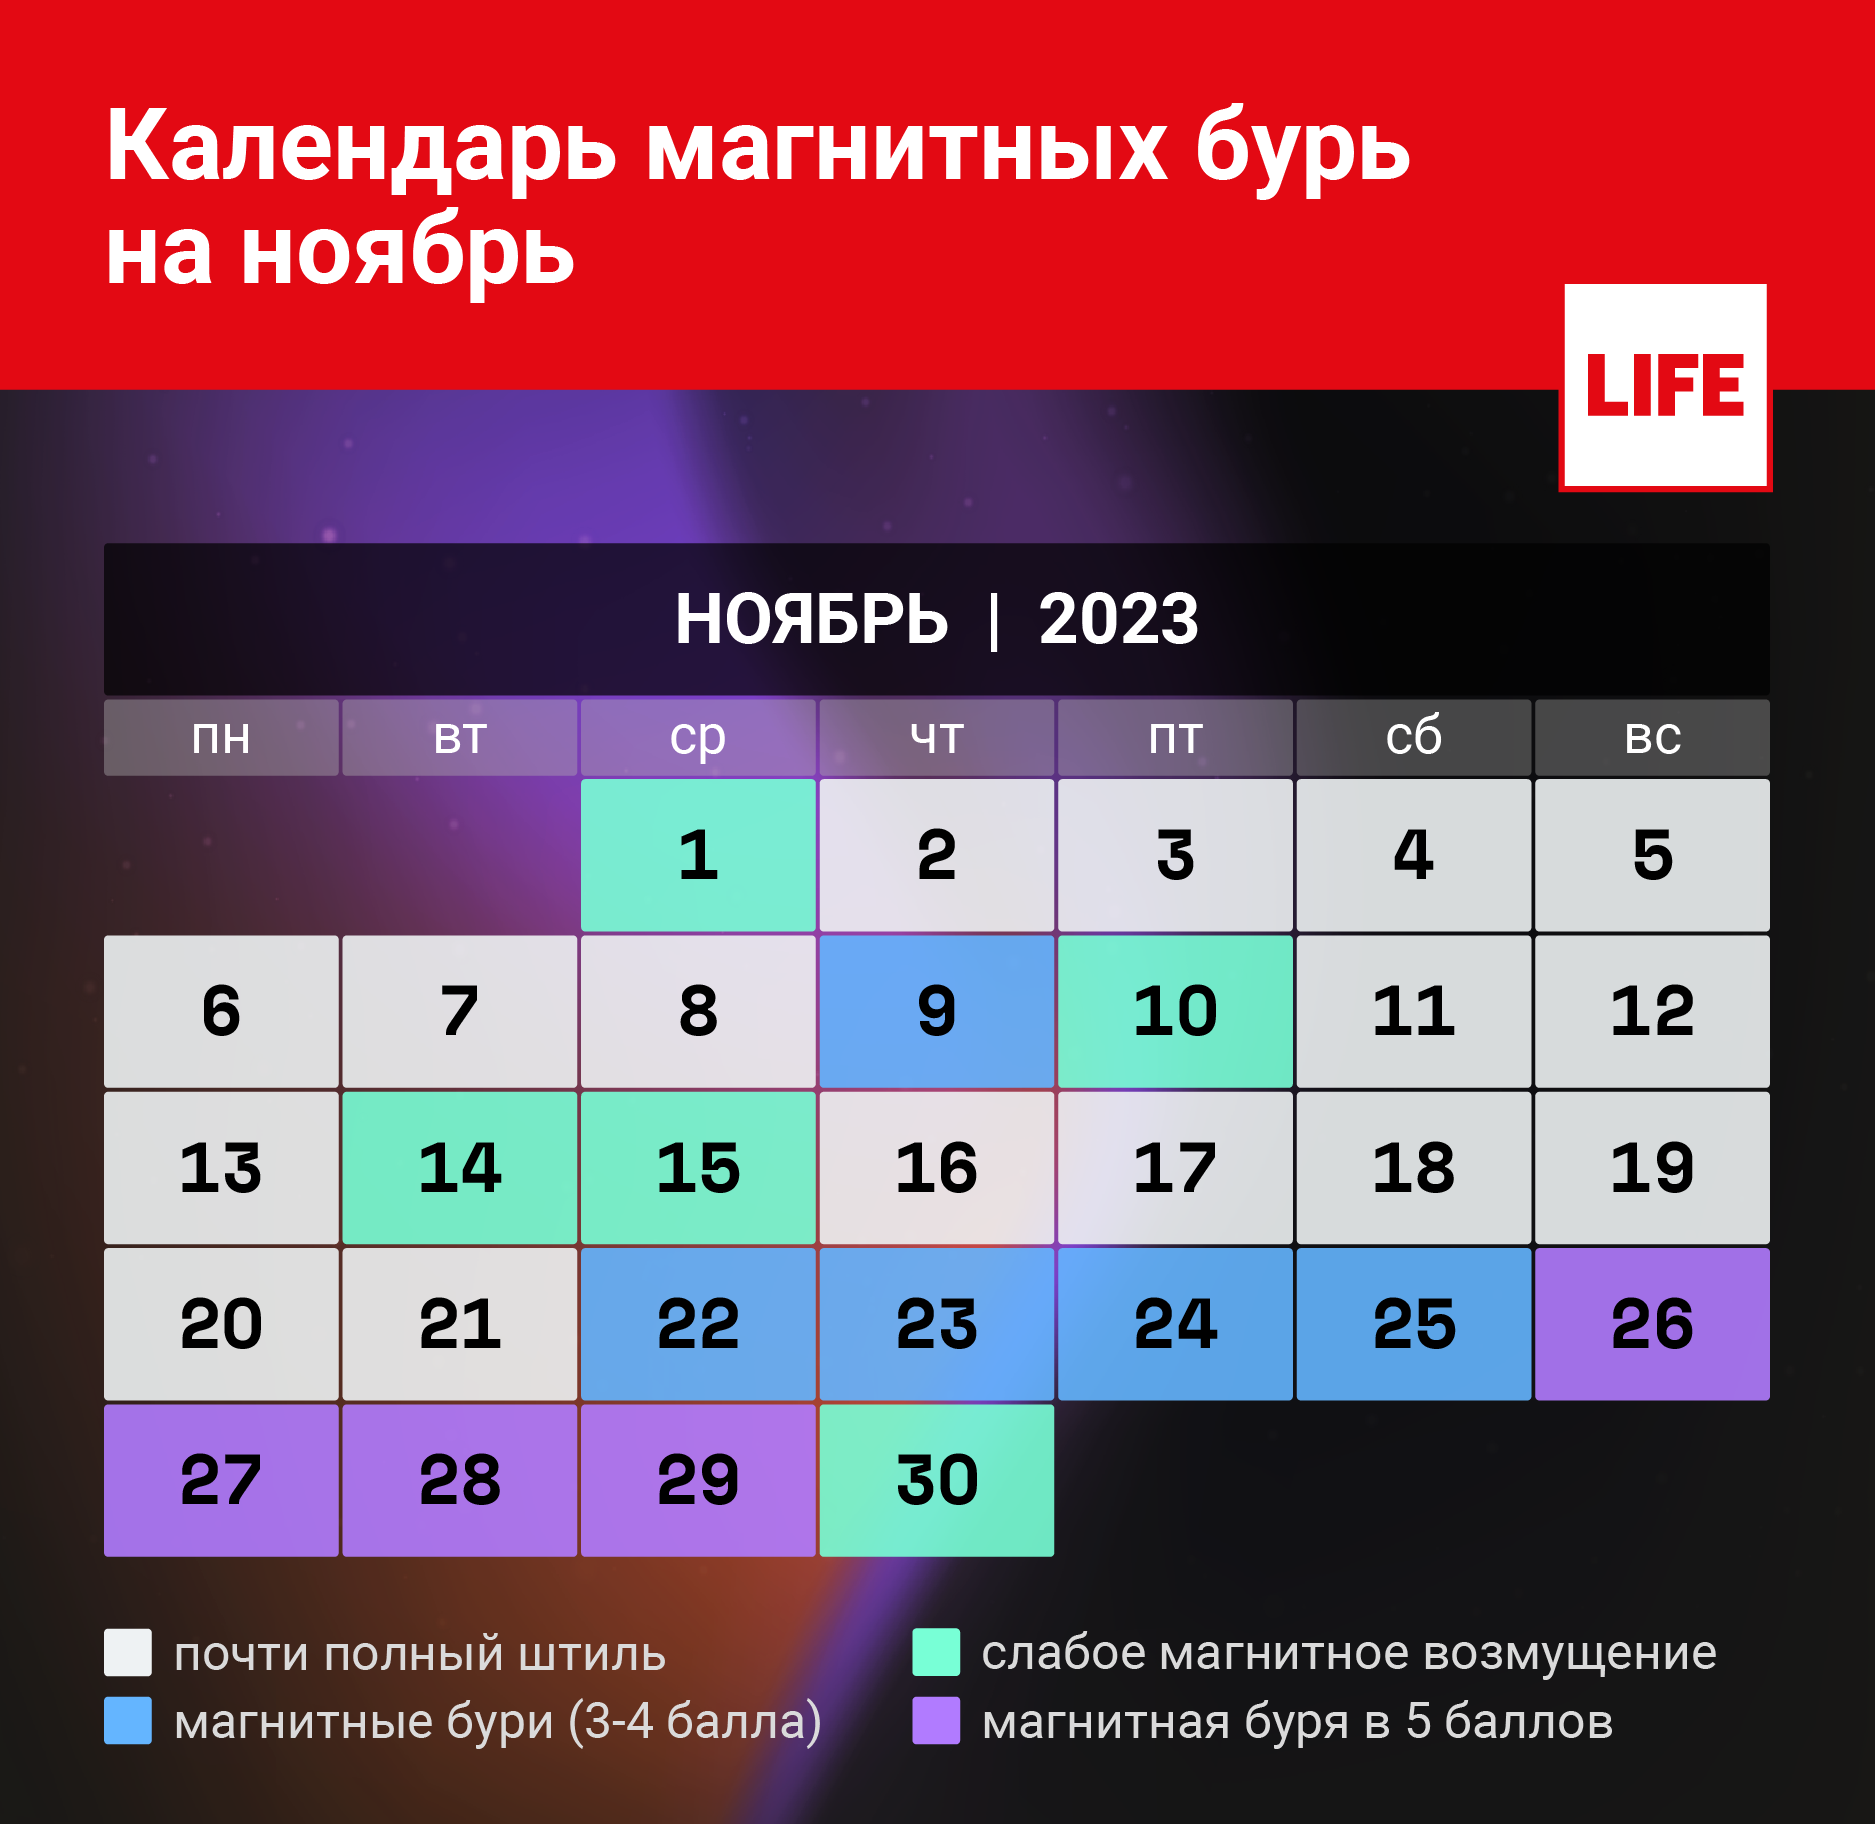 Календарь магнитных бурь в ноябре 2023 года. Инфографика © LIFE 